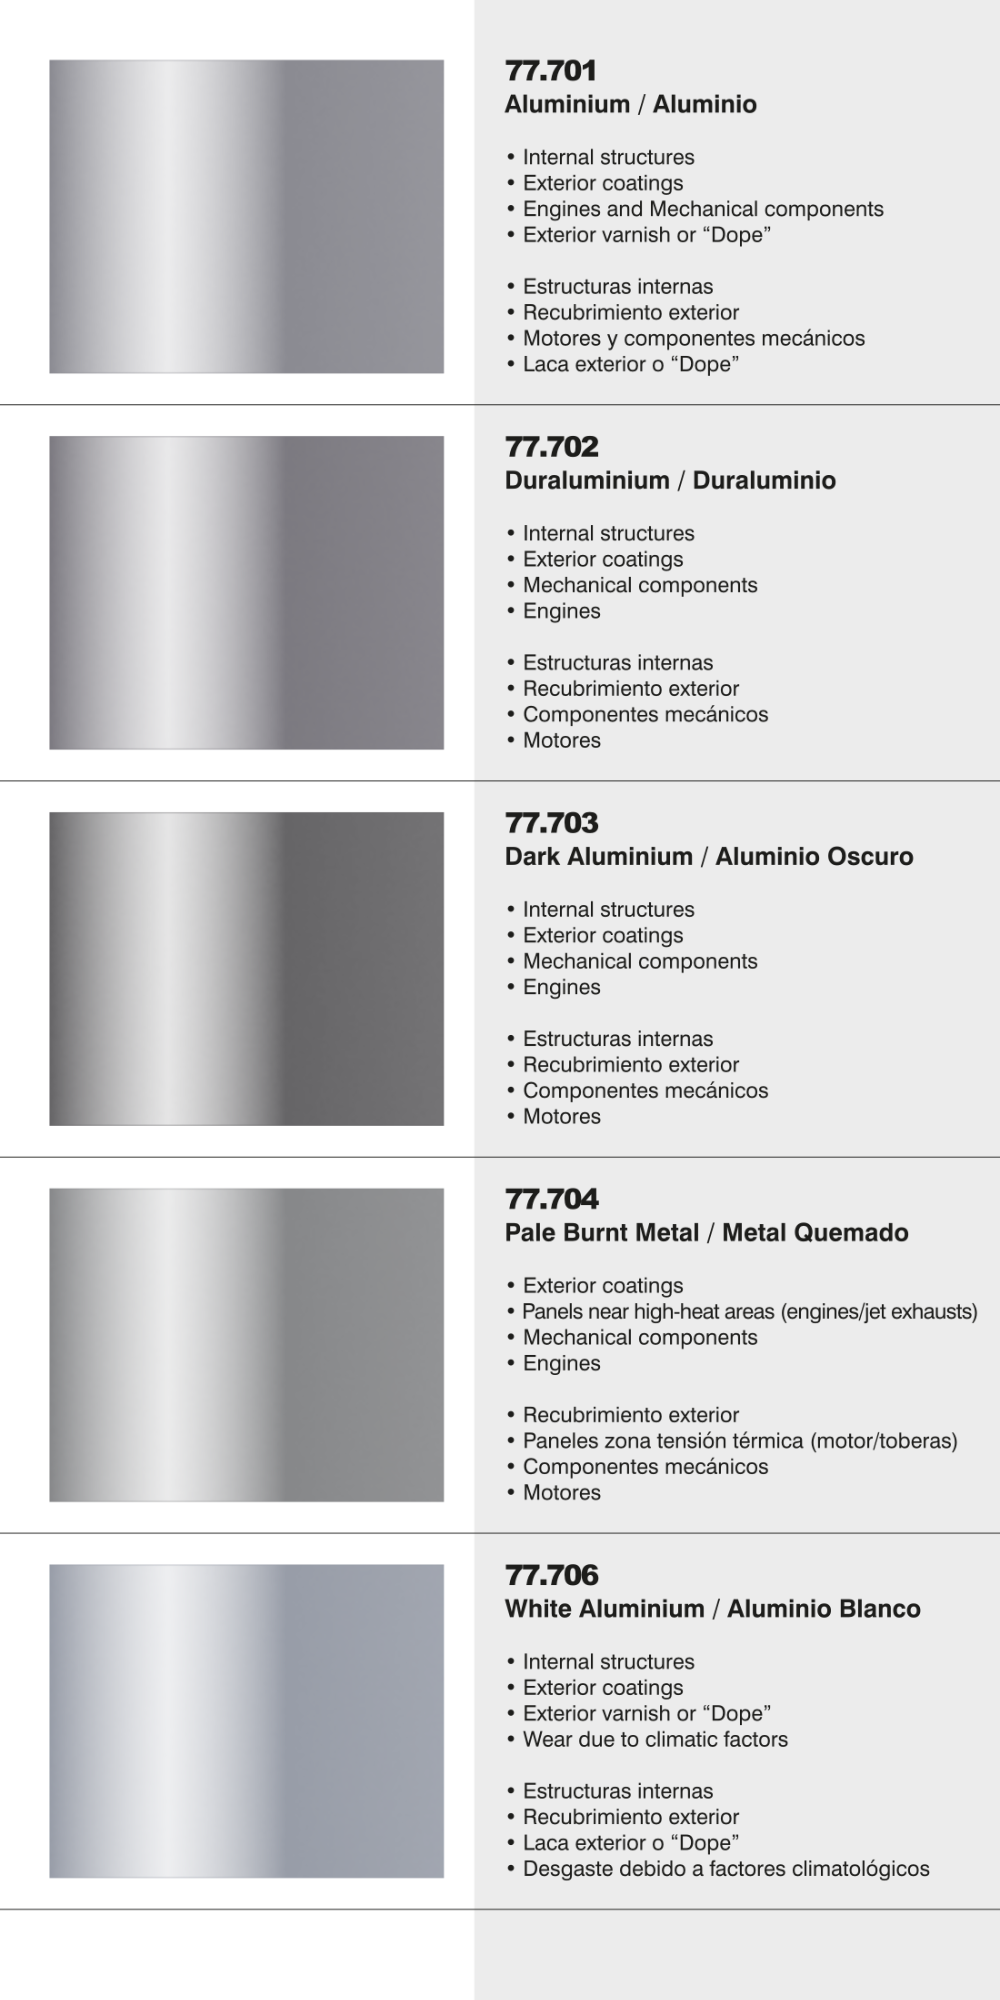 Vallejo Metal Color Steel too dark? - Painting & Finishing